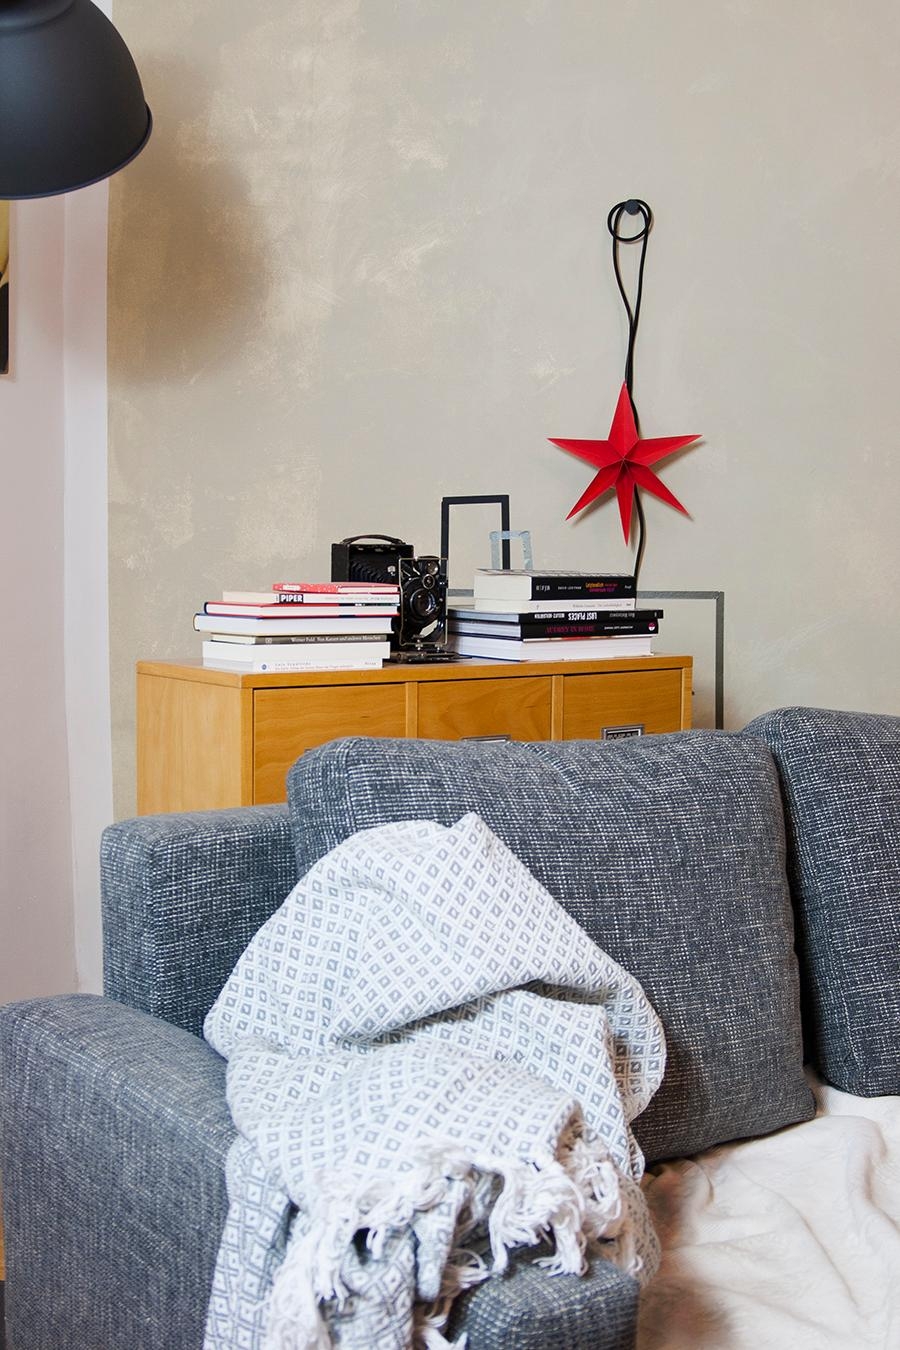 #rot geht bei uns immer, fand auch #frauhase und schenkte mir den tollen #stern❣️
#decke #sofa #wohnzimmer #weihnachten